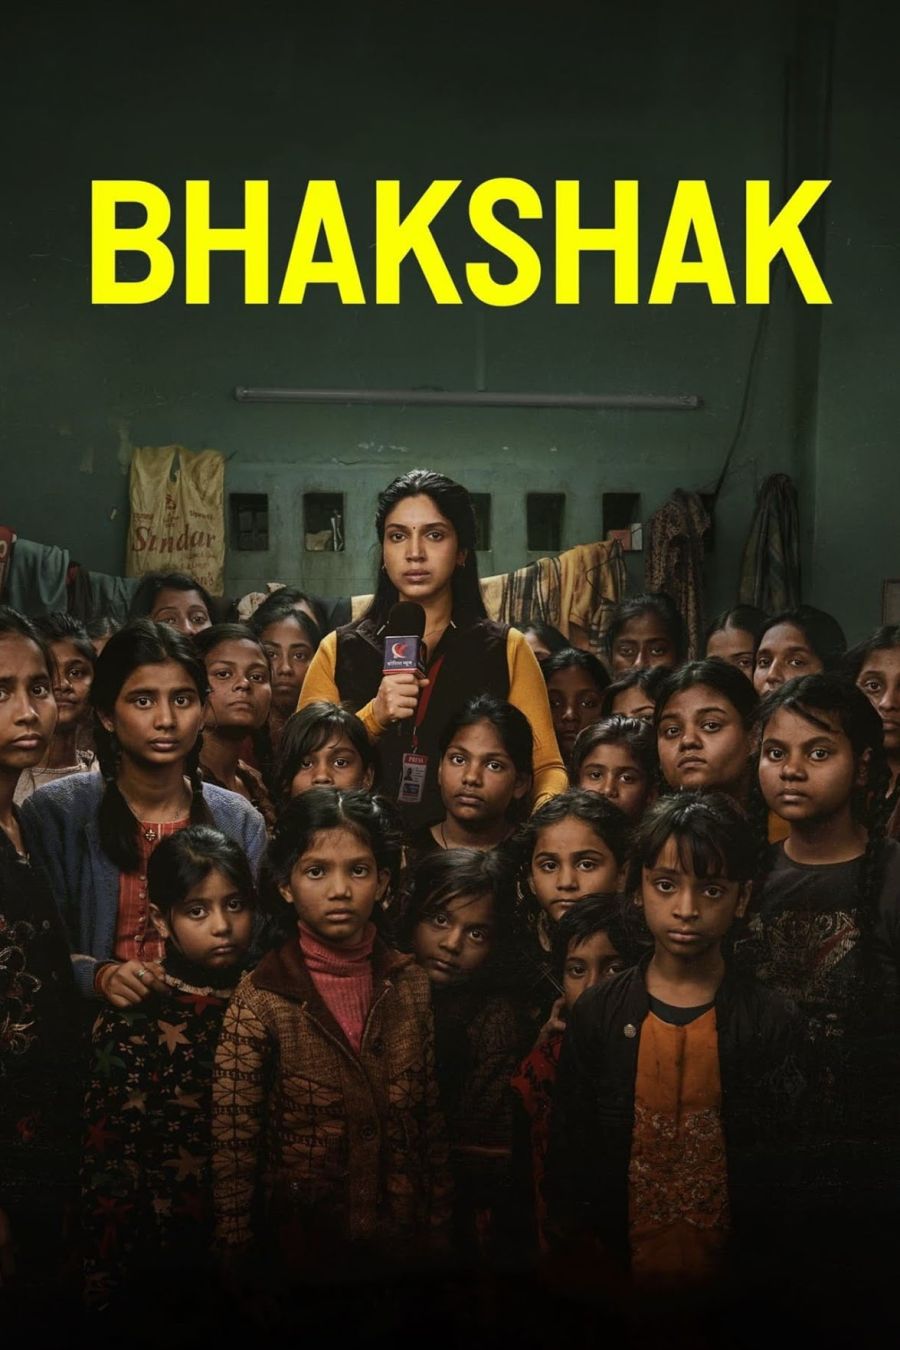 lo que ignoramos: una película que dejó expuesta la mafia hindú que golpeó al feminismo de oriente